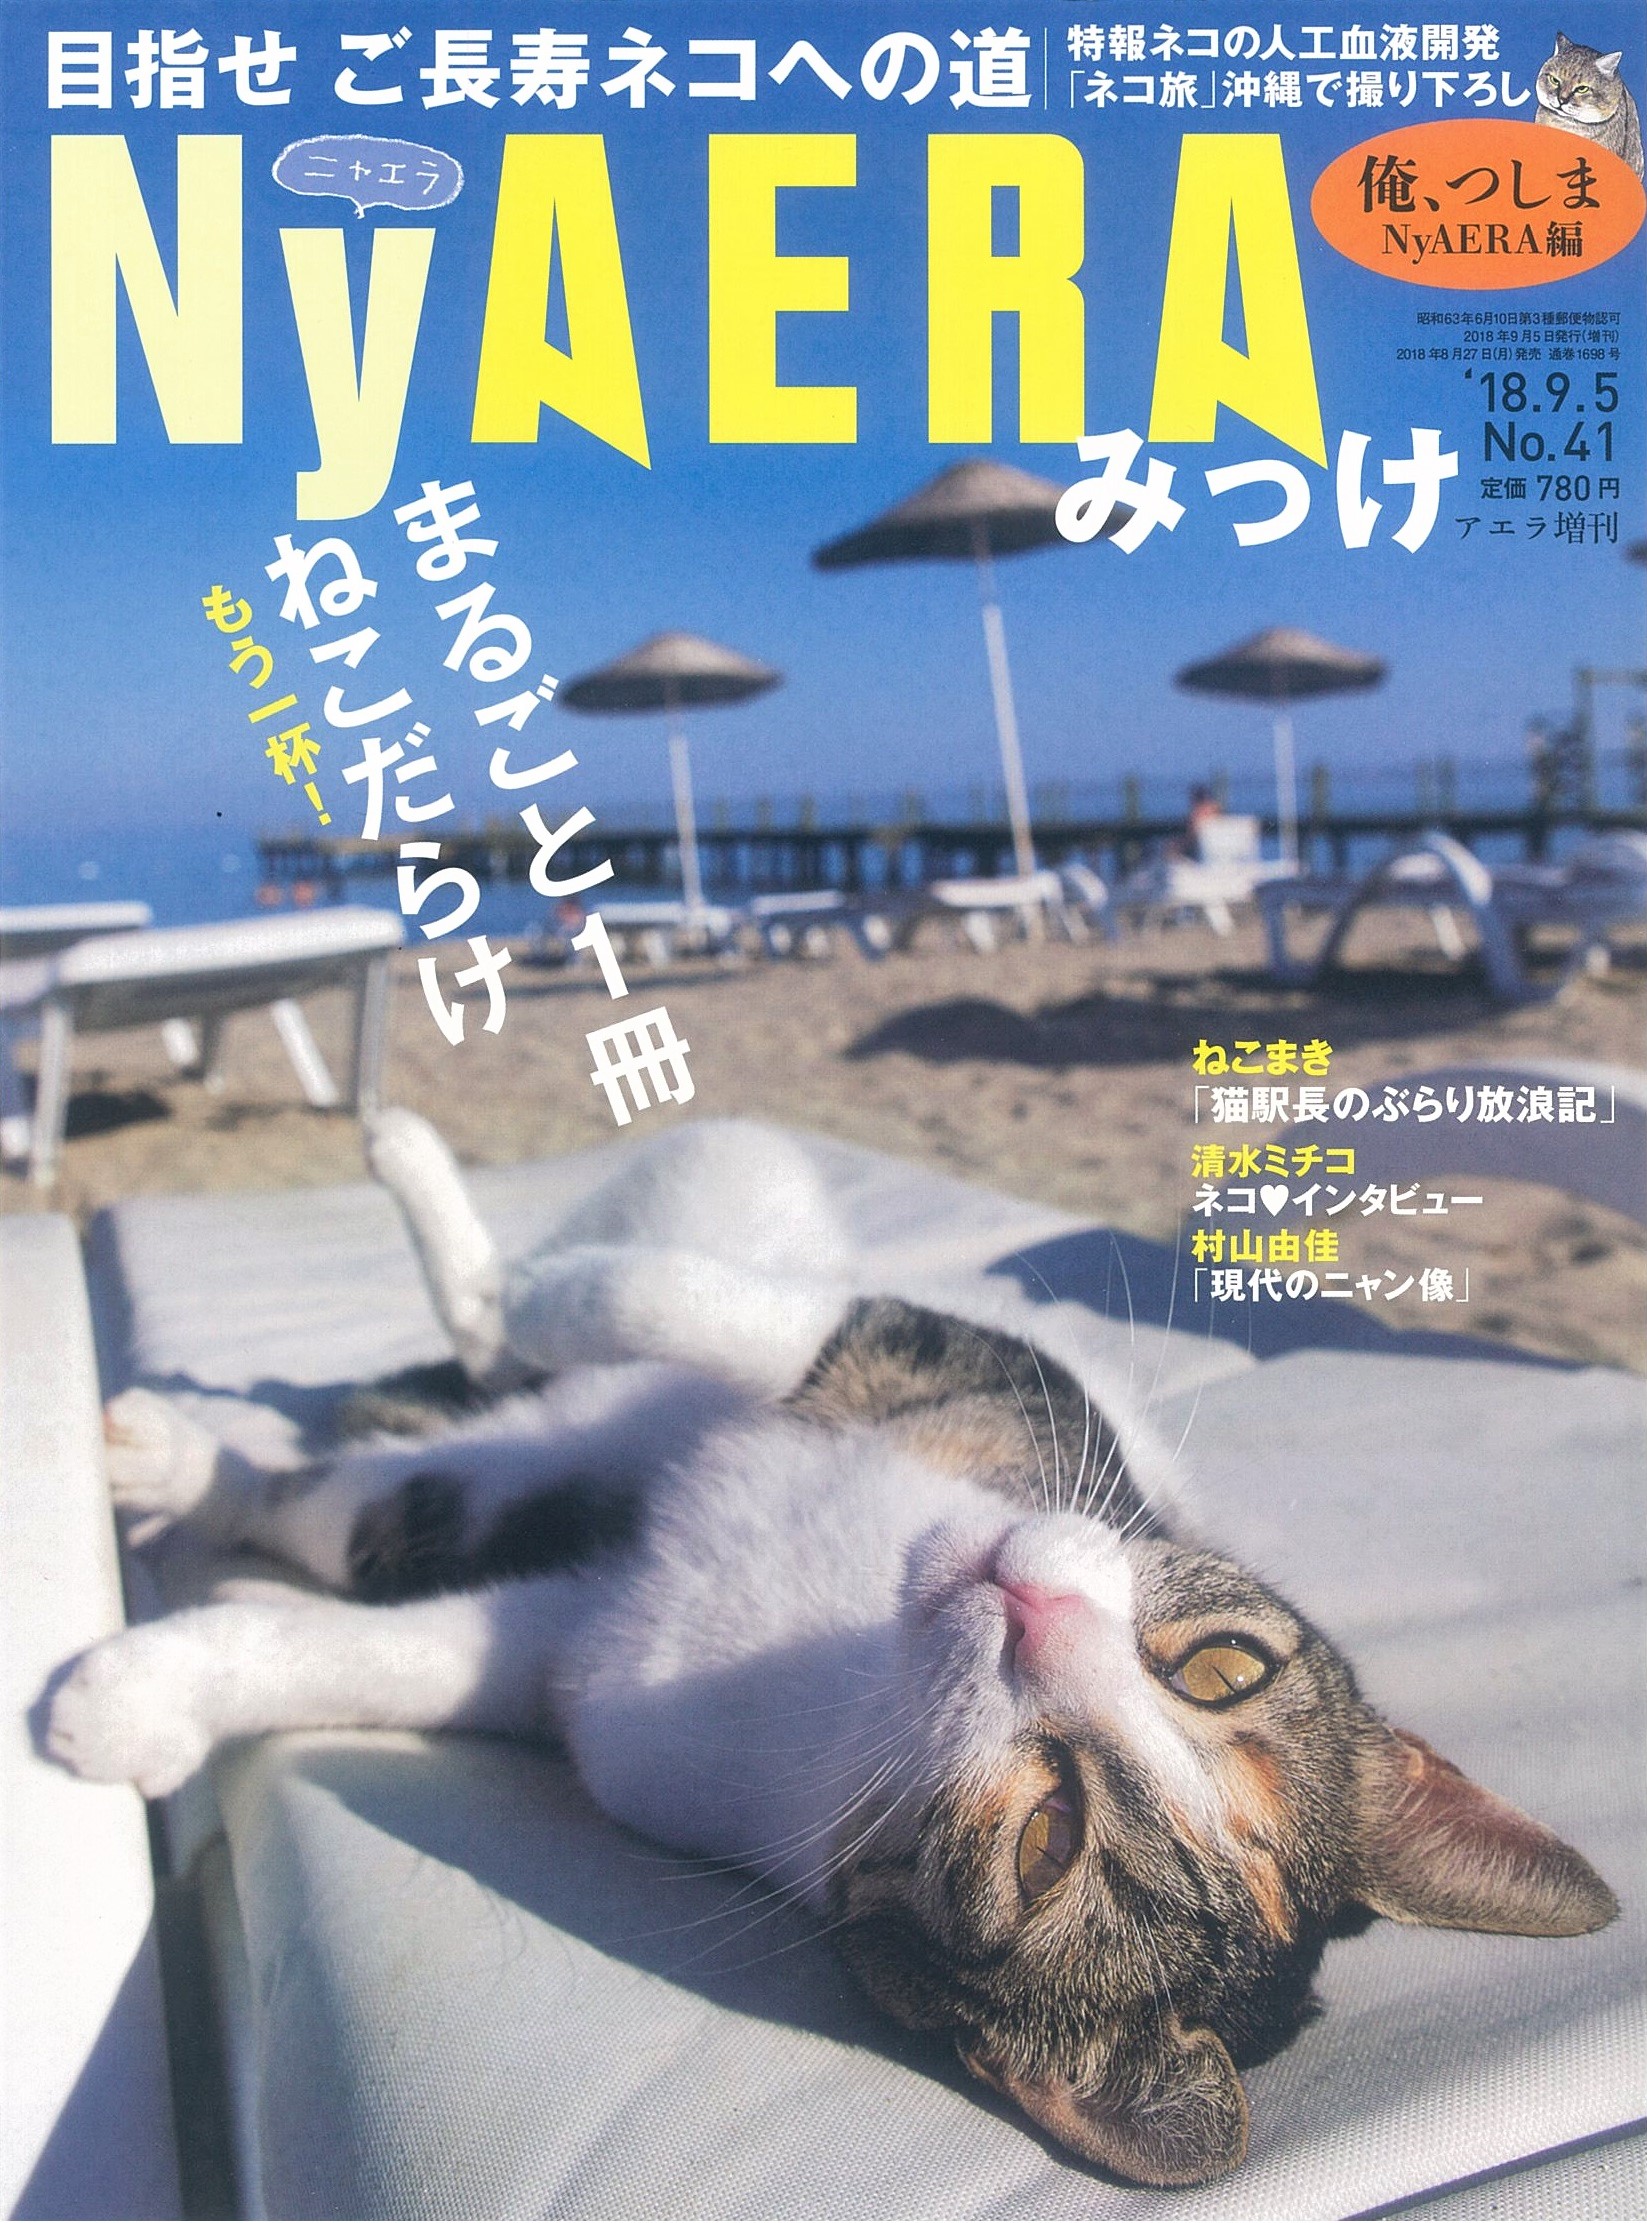 猫ちゃん雑誌『NyAERA』に掲載されました